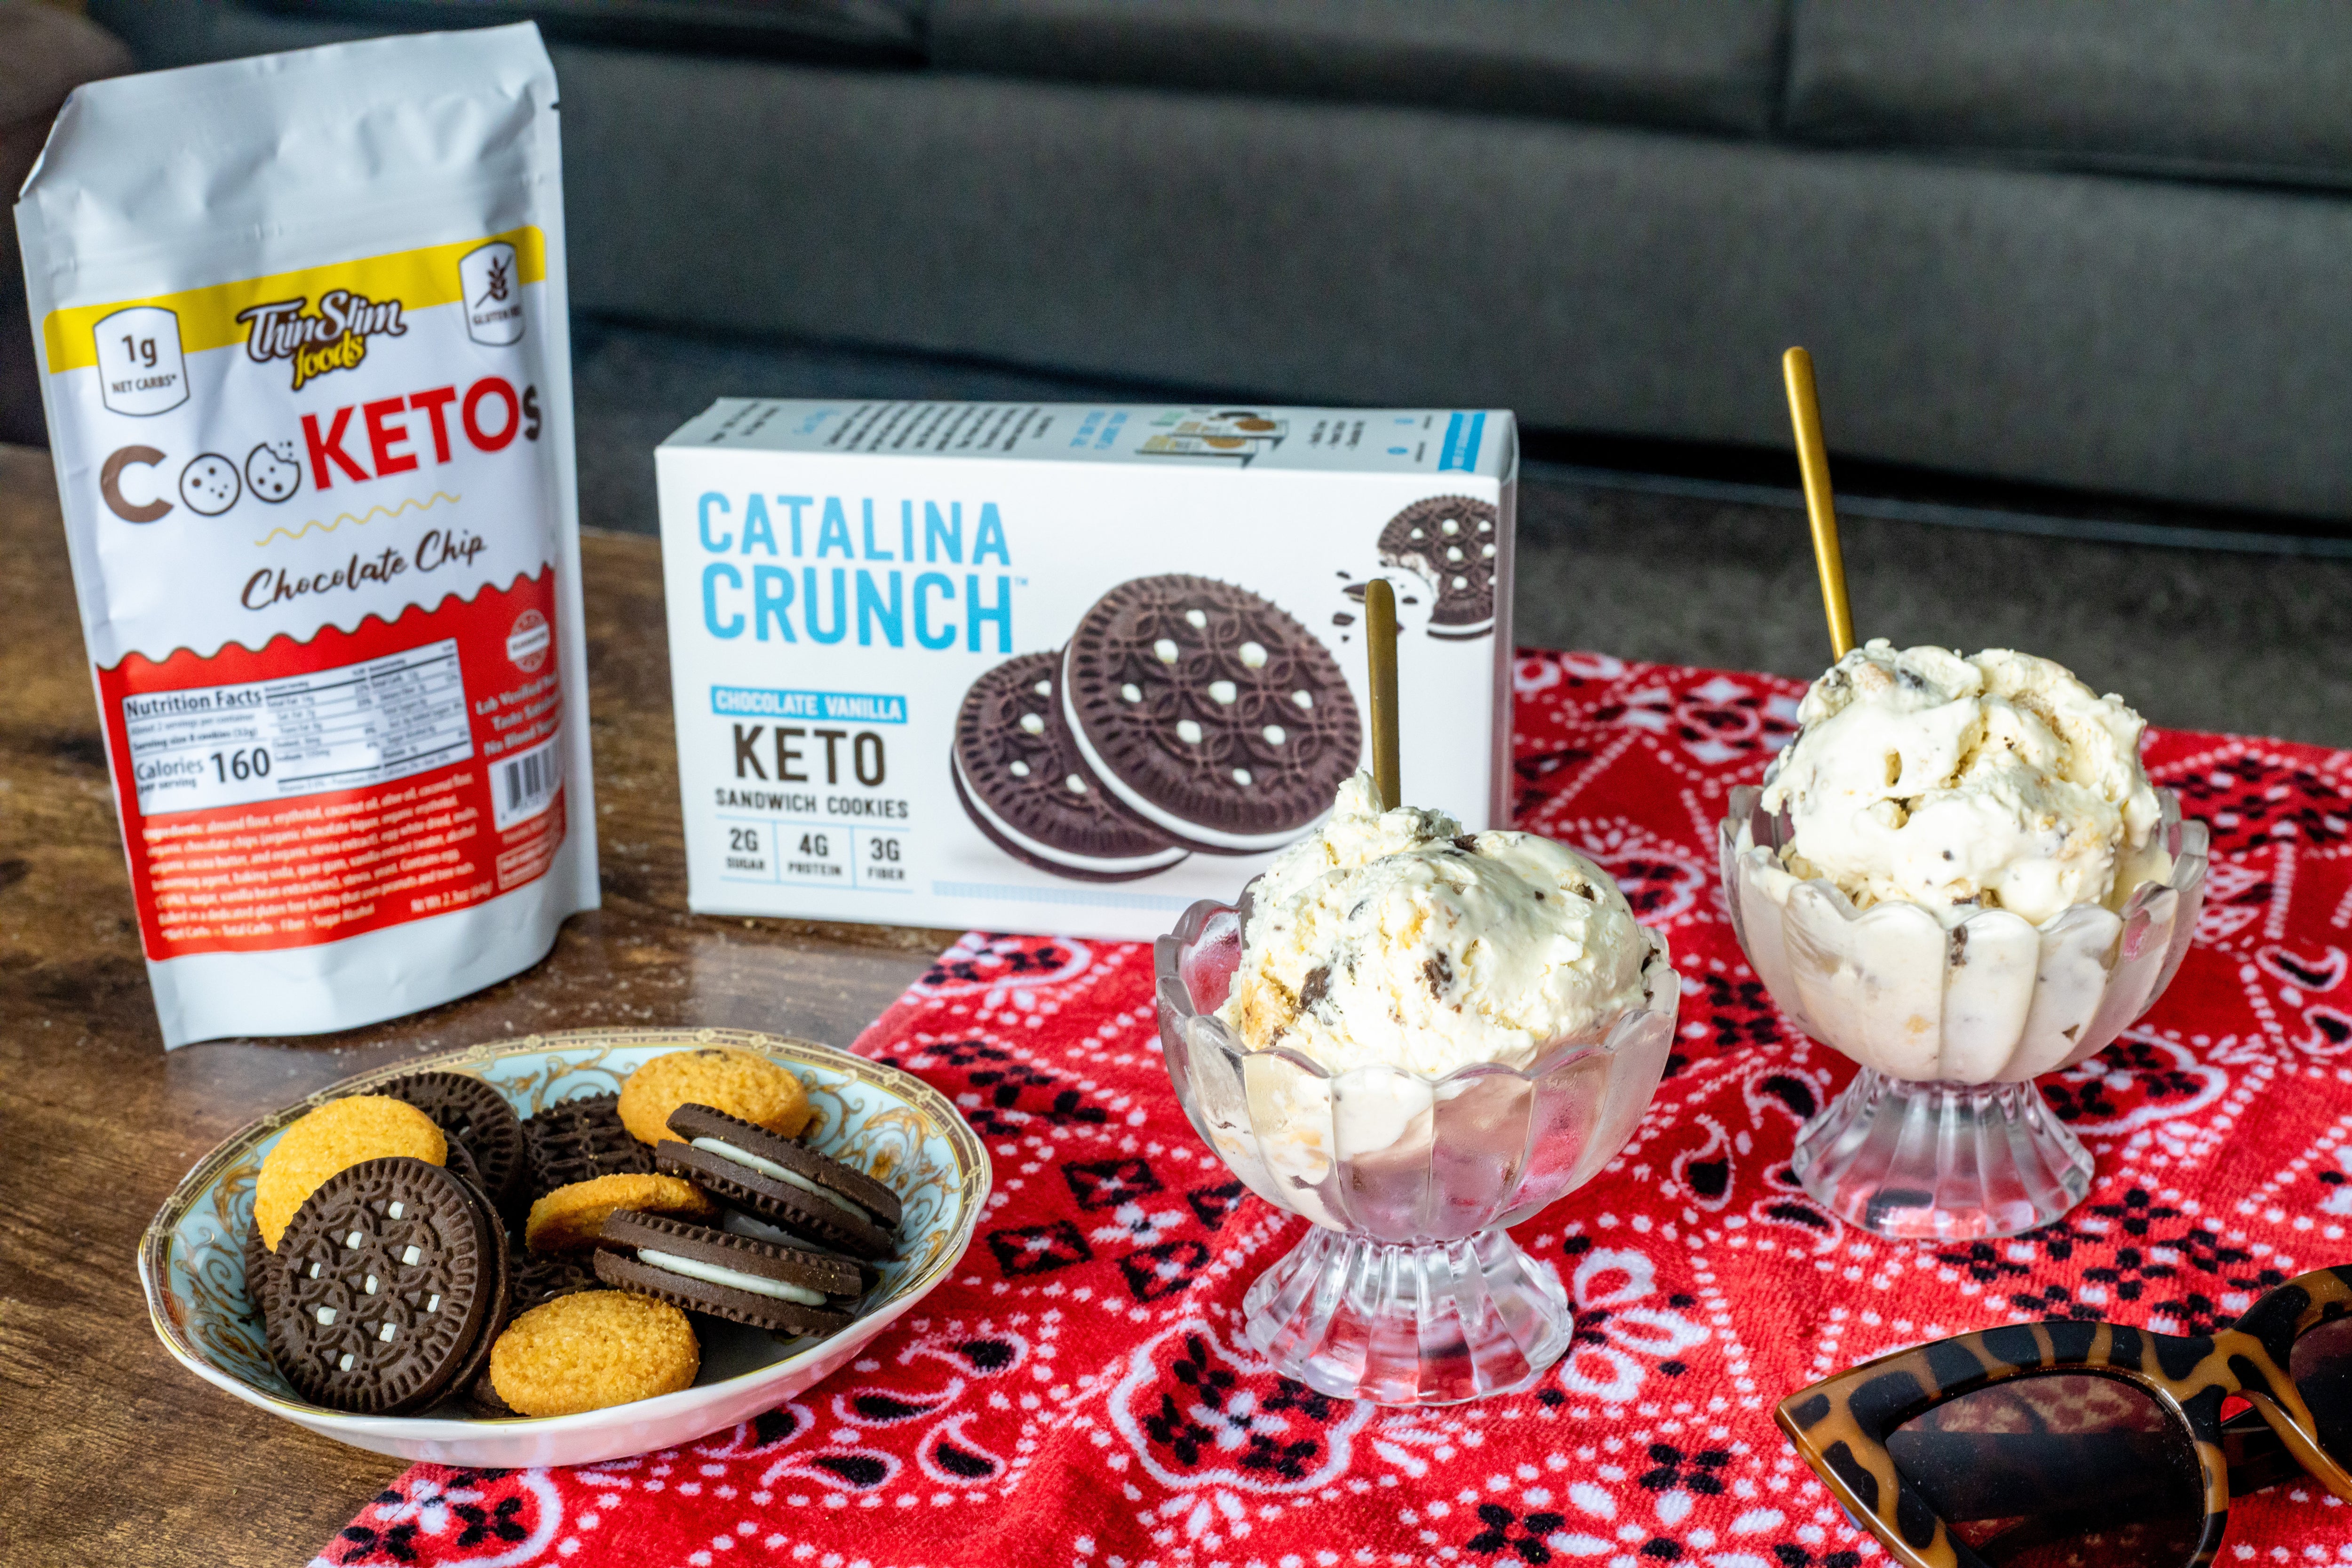 Thin Slim Foods & Catalina Crunch Cookie Blast No Churn Ice Cream